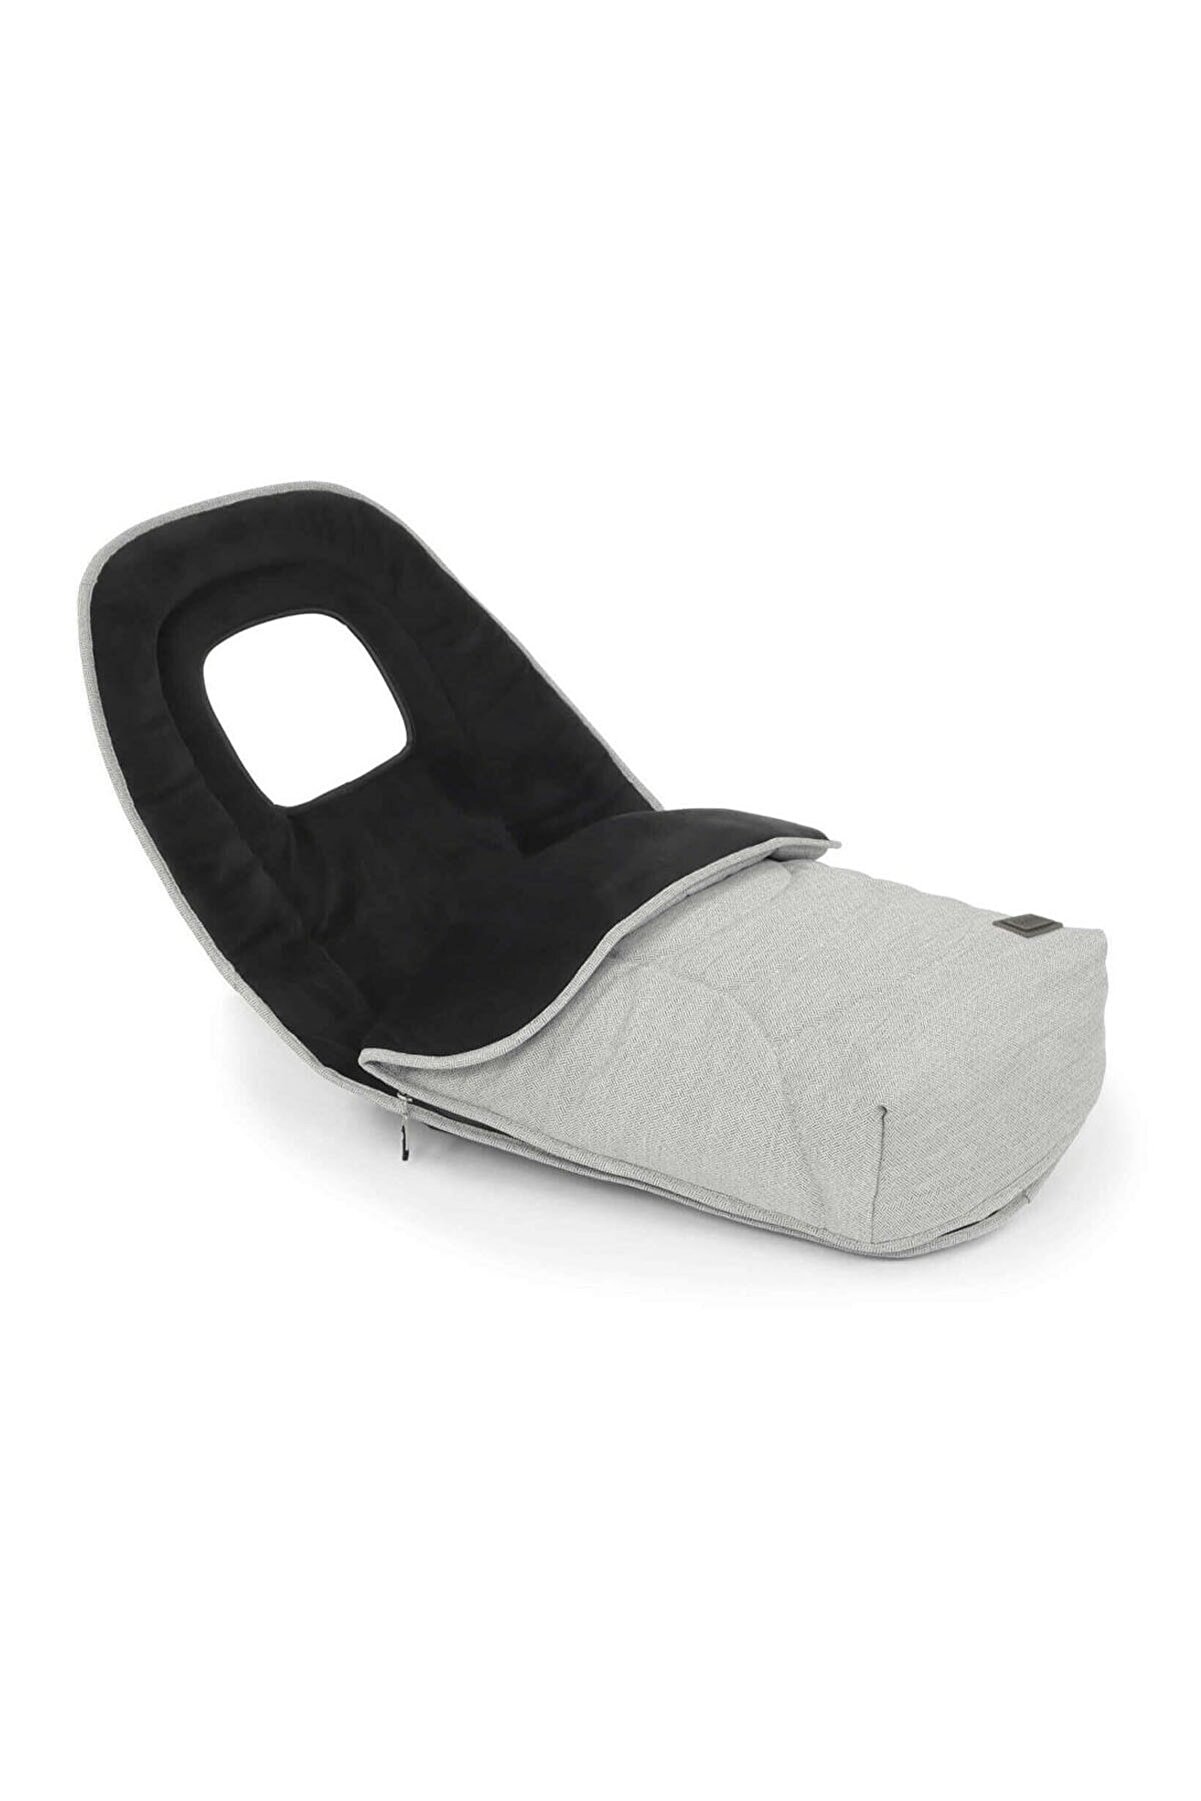 Oyster ® Bebek Arabası Uyku Tulumu Açık Gri